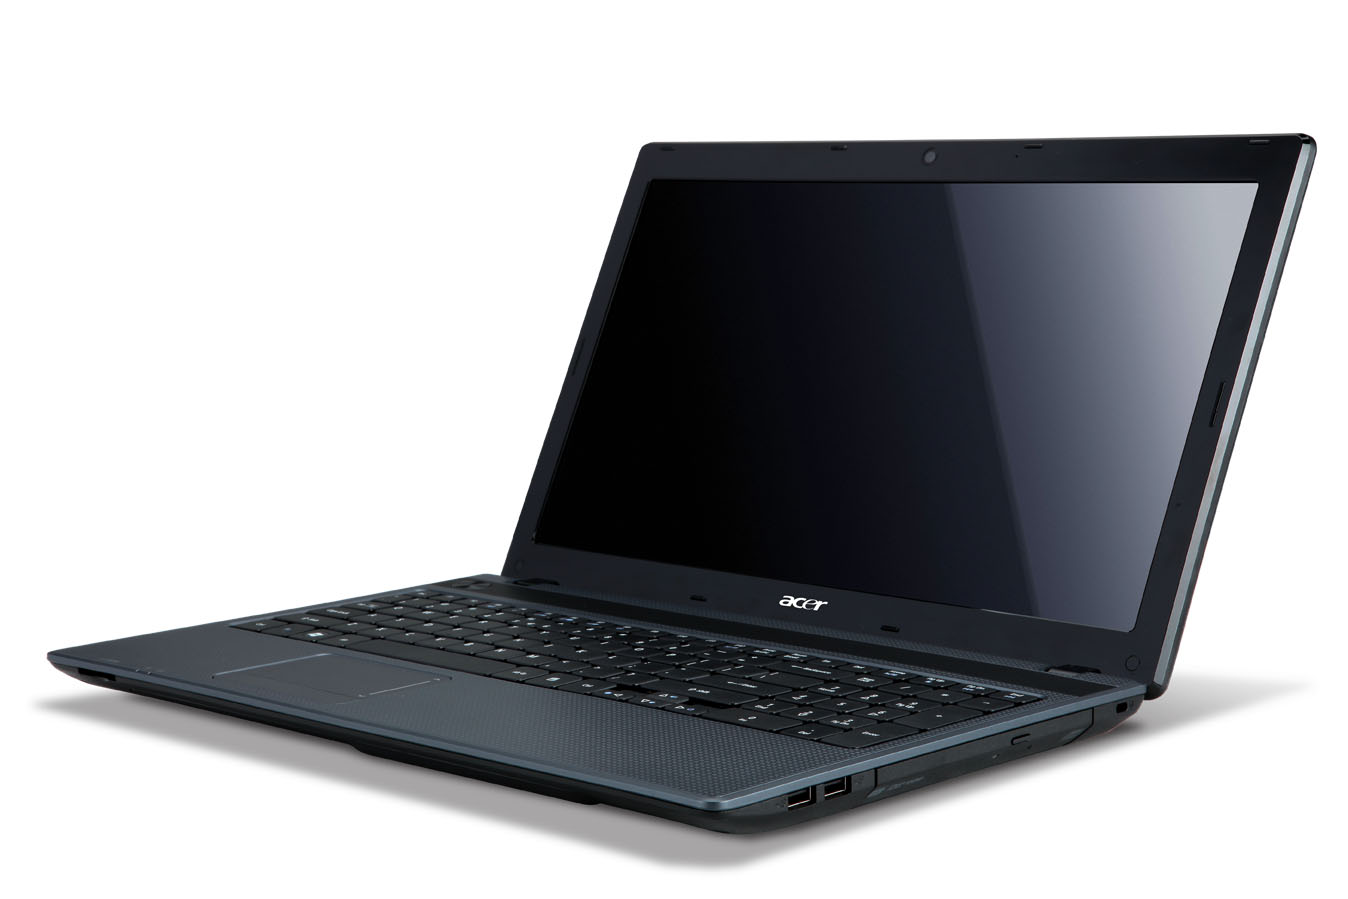 Daftar Harga Laptop Acer Baru Bekas Second di Jual Murah 